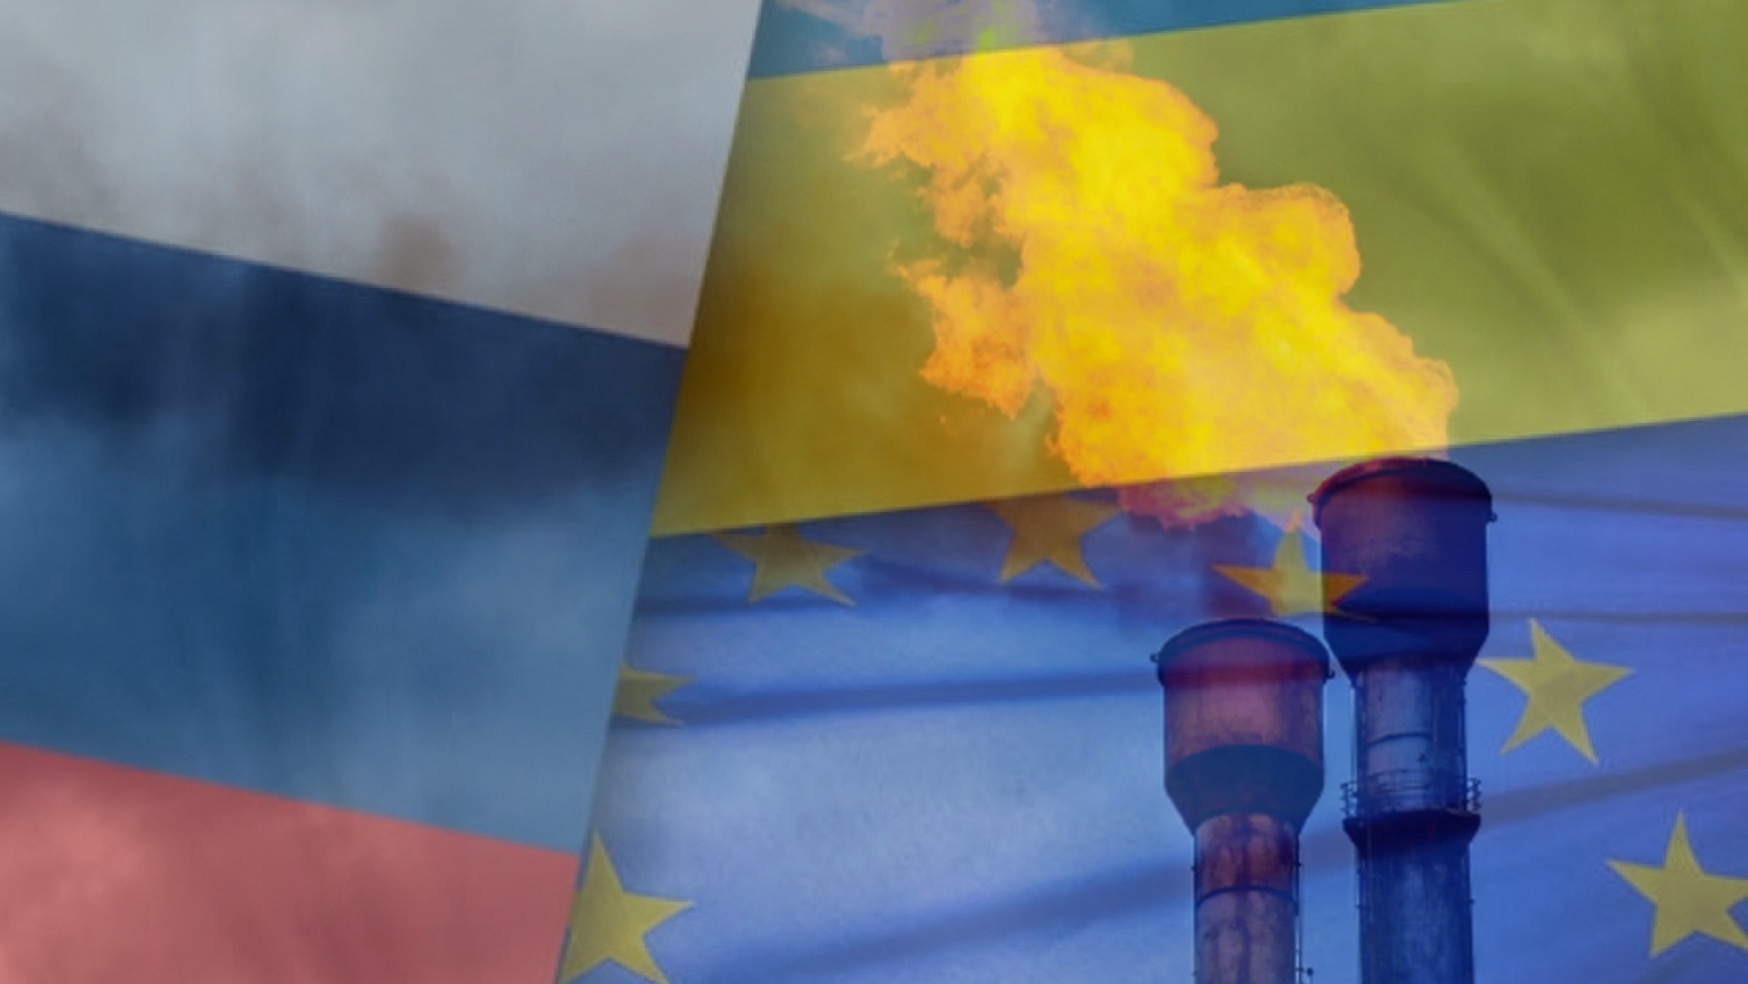 Le sommet du gaz face au conflit Russo-Ukrainien (c) Salahddin Kabes